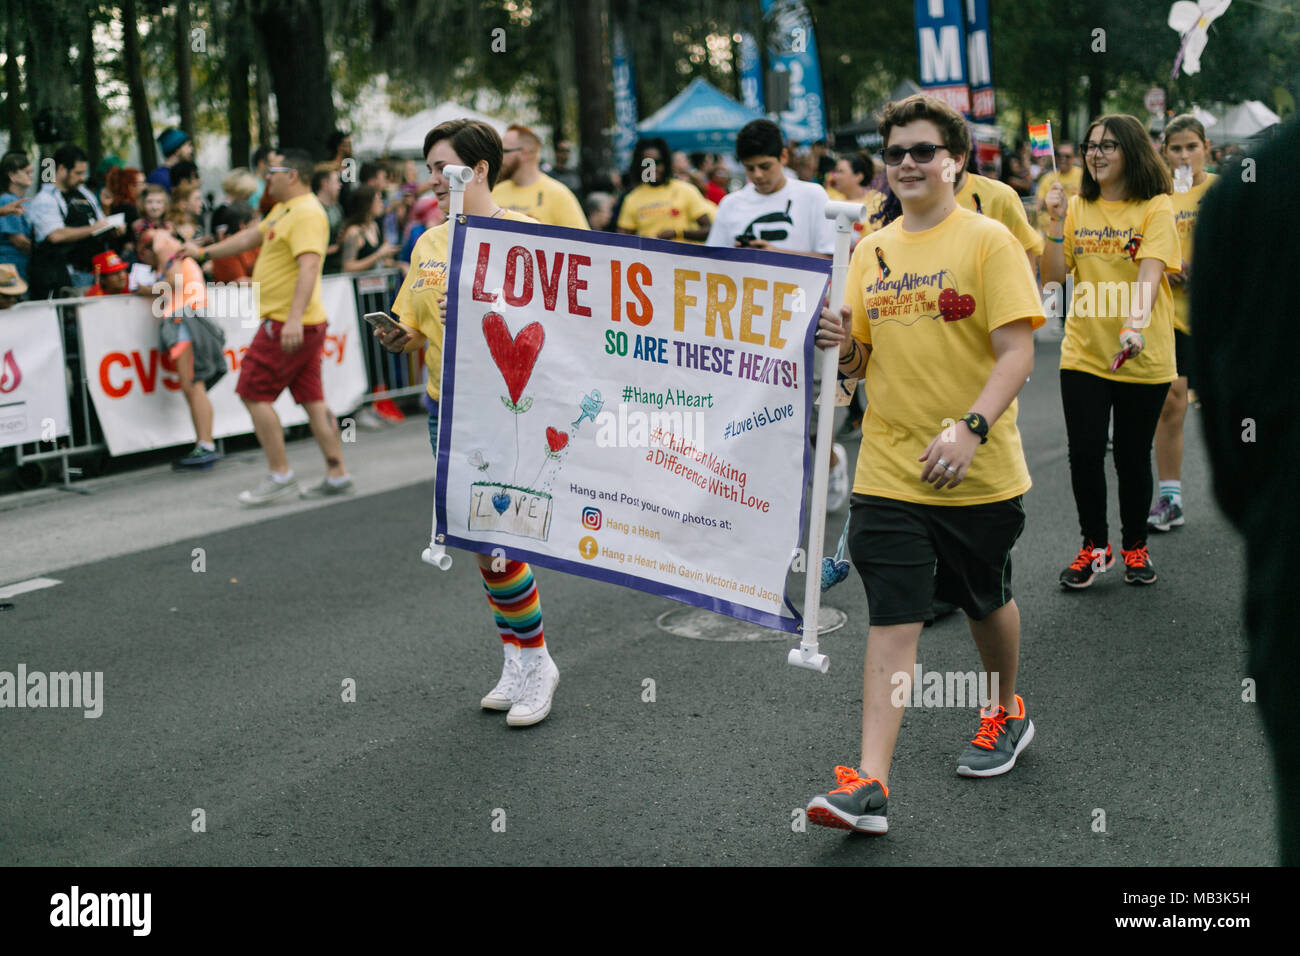 Hängen Sie ein Herz in der Orlando Pride Parade marschiert (2016). Stockfoto